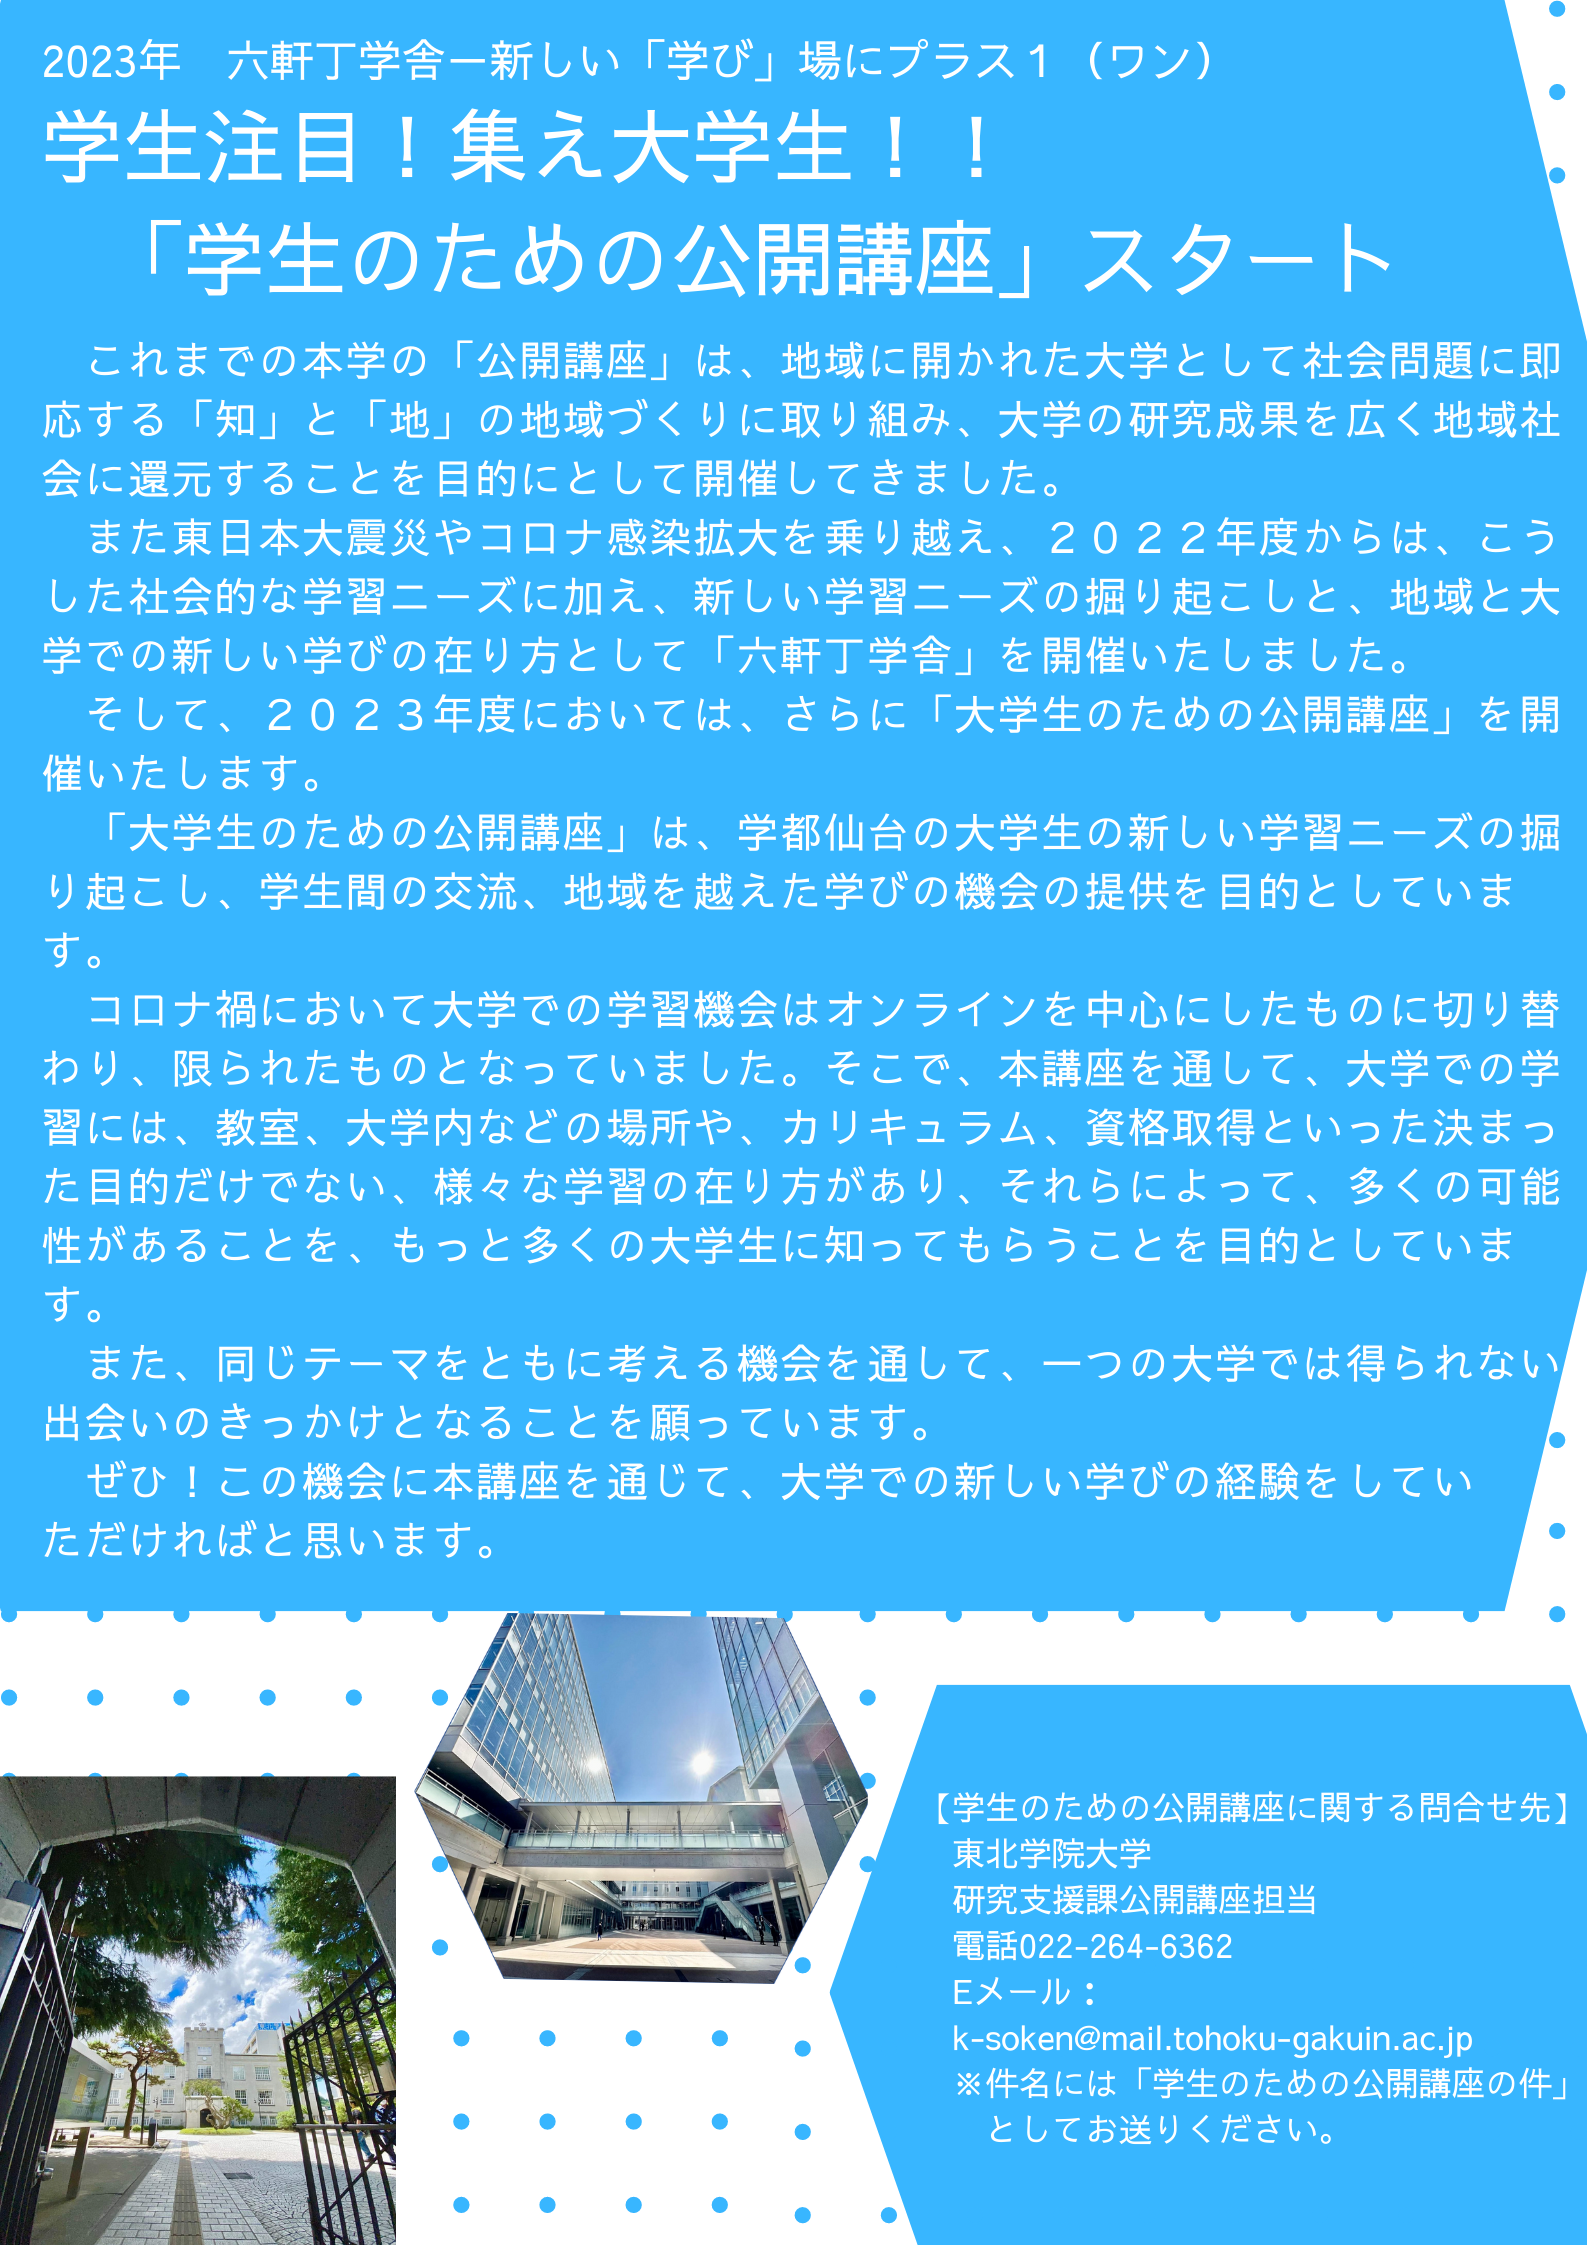 https://www.tohoku-gakuin.ac.jp/research/compatibility/content/a32dc6a7d665a6e5e559777ad27b7e38c6d7ee2a.png